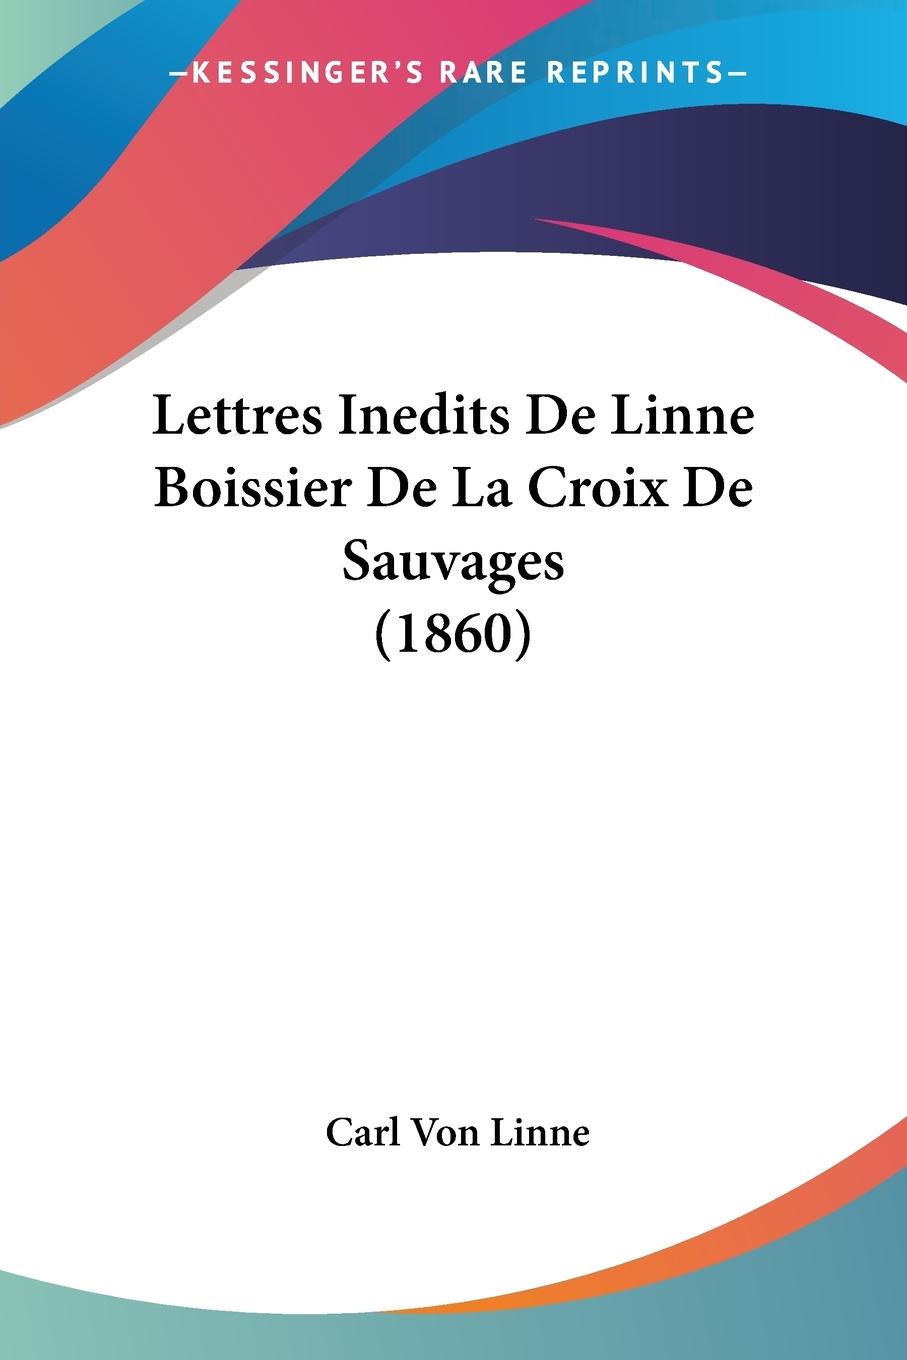 Lettres Inedits De Linne Boissier De La Croix De Sauvages (1860)